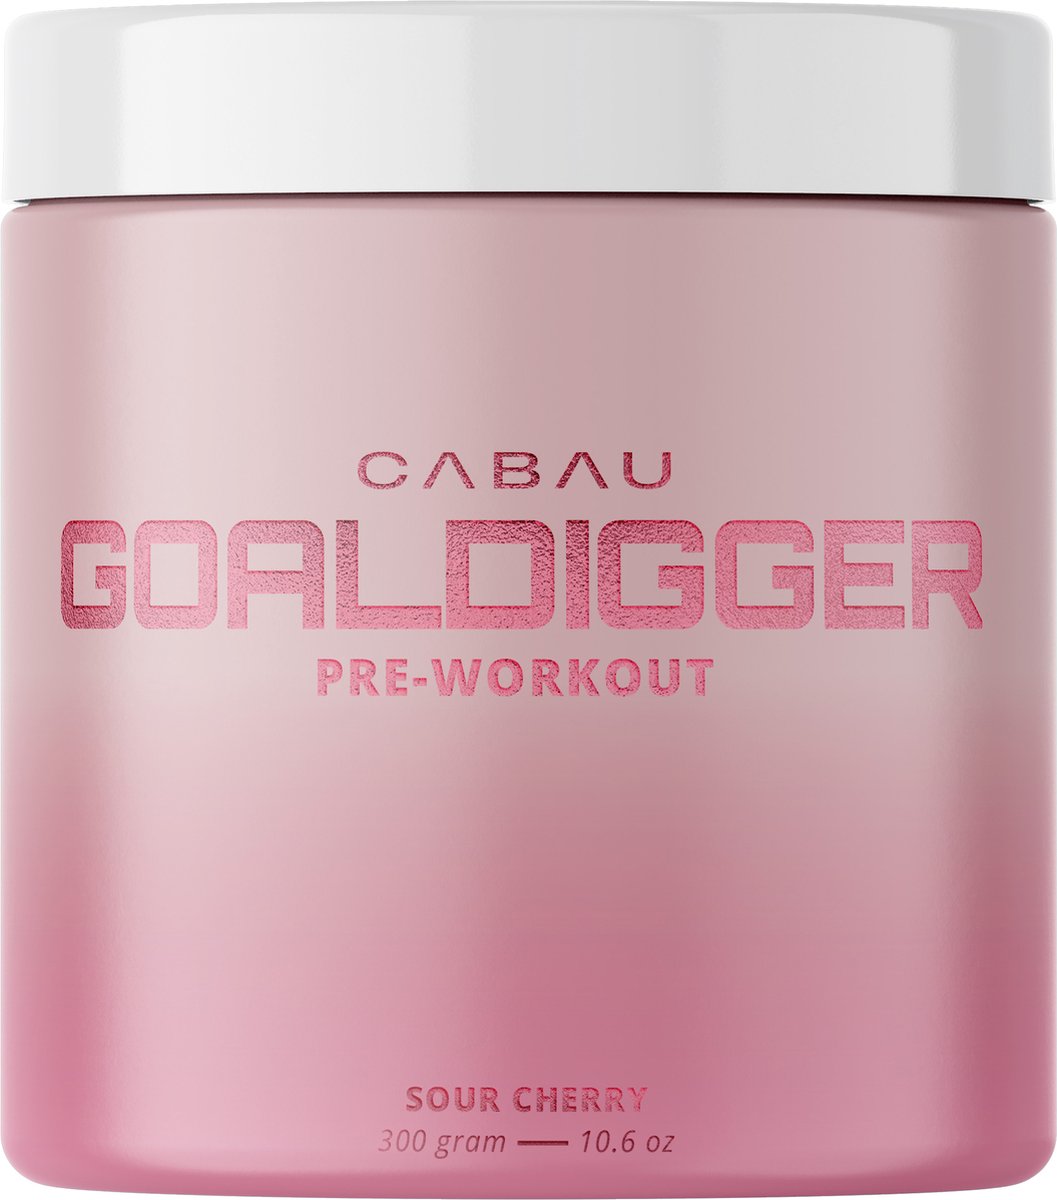 Cabau Lifestyle - Pre-workout - Sweet Cherry - 300 gram - 30 boosts - Voor meer uithoudingsvermogen en energie - Pre workout voor vrouwen